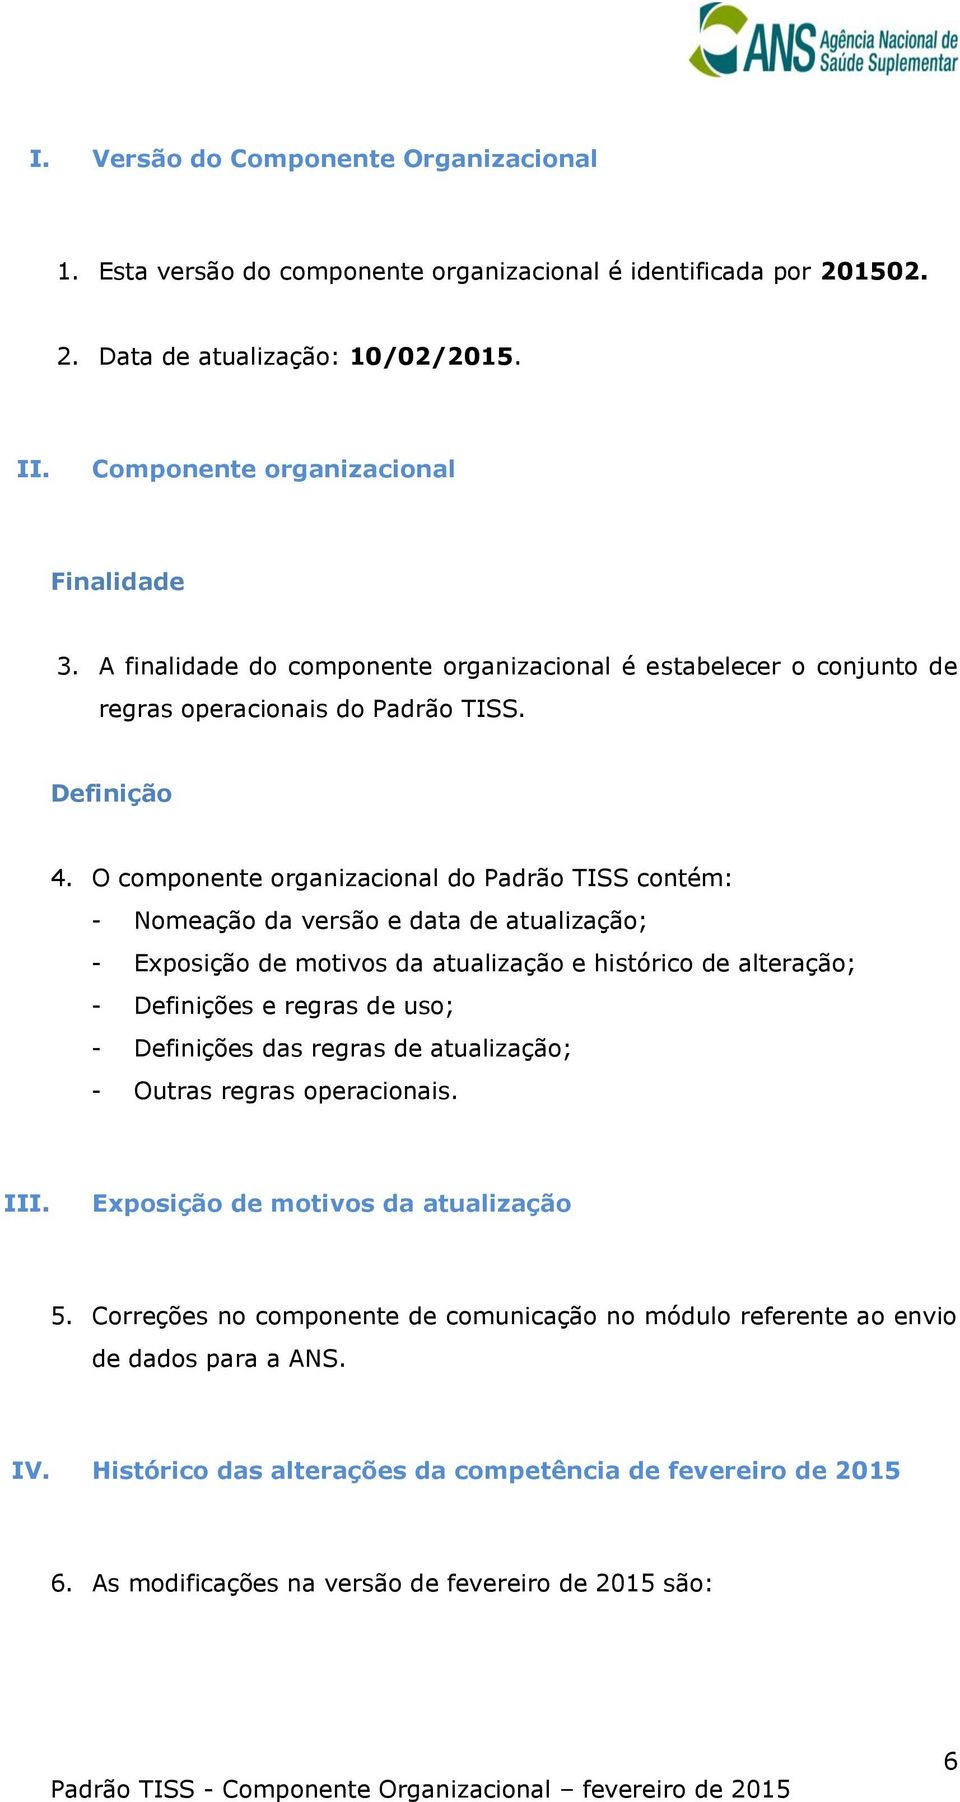 O componente organizacional do Padrão TISS contém: - Nomeação da versão e data de atualização; - Exposição de motivos da atualização e histórico de alteração; - Definições e regras de uso; -